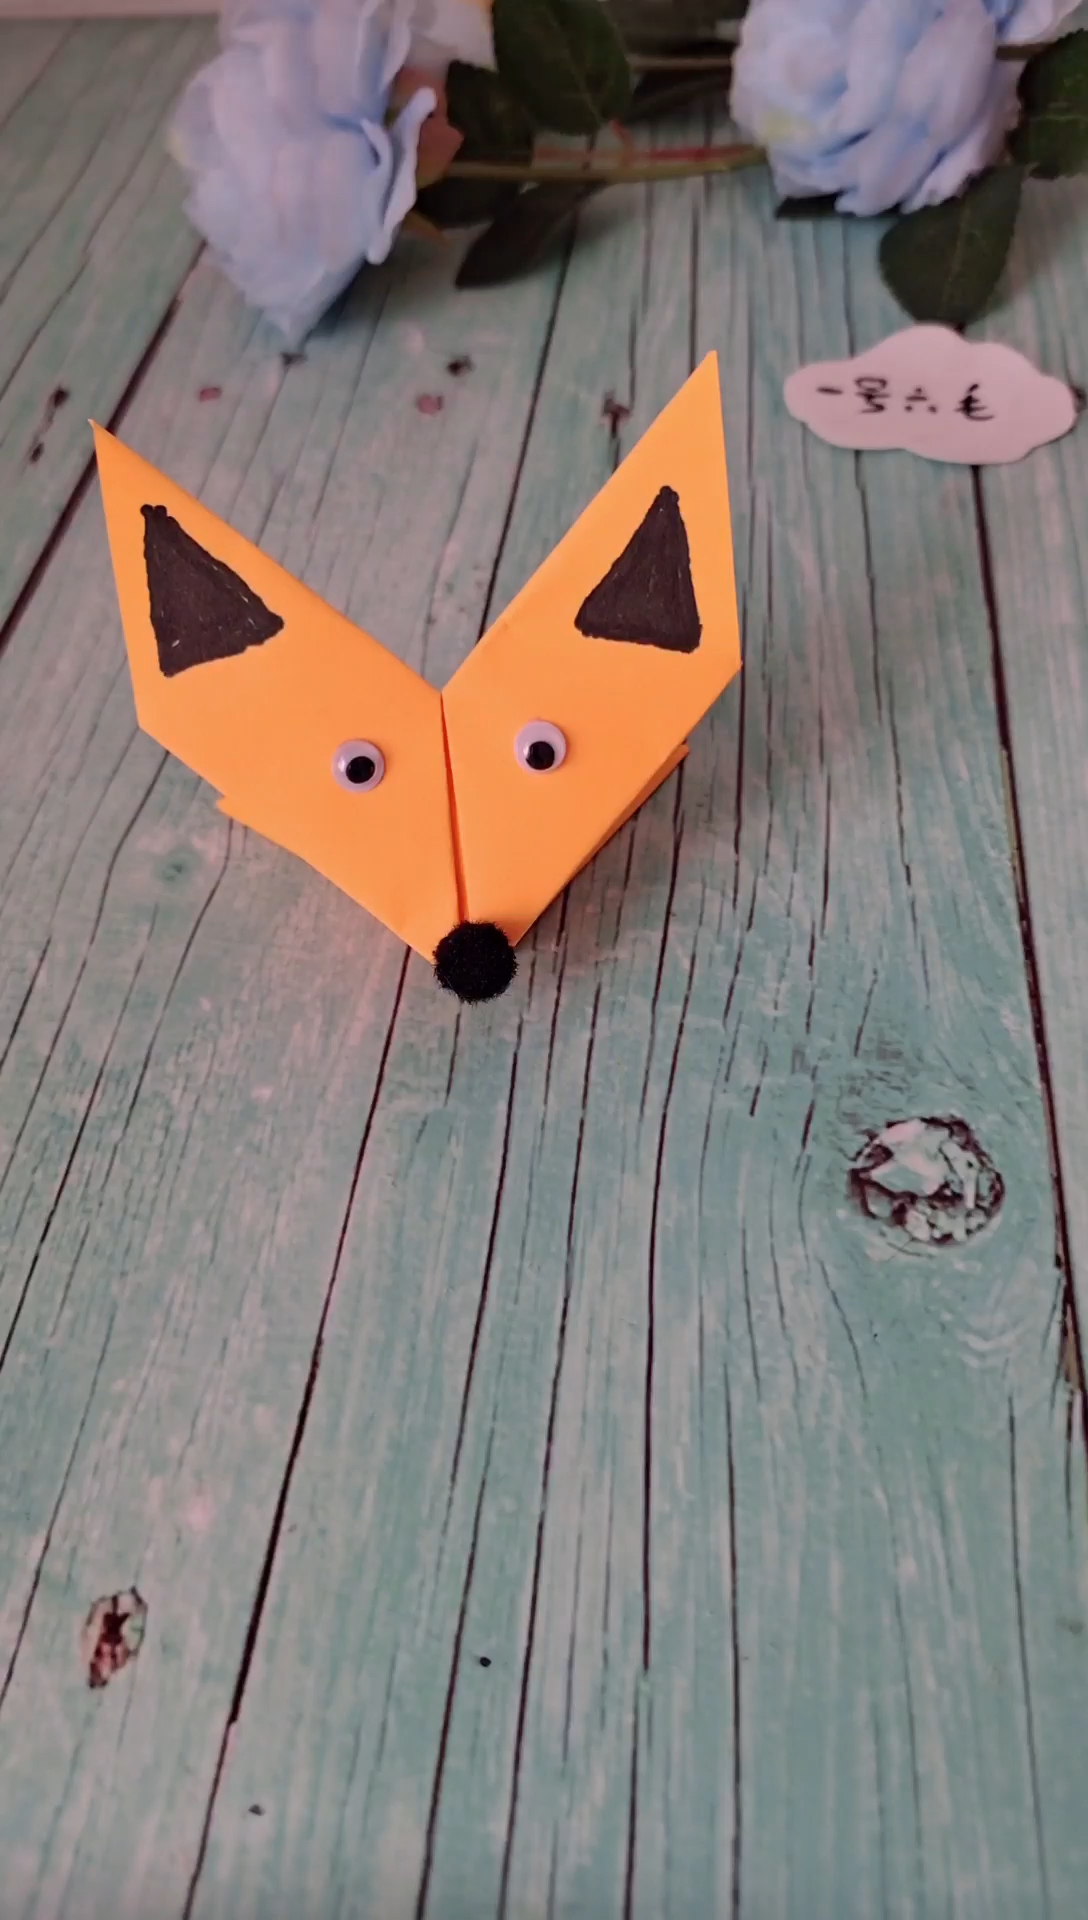 张嘴狐狸头折纸图片